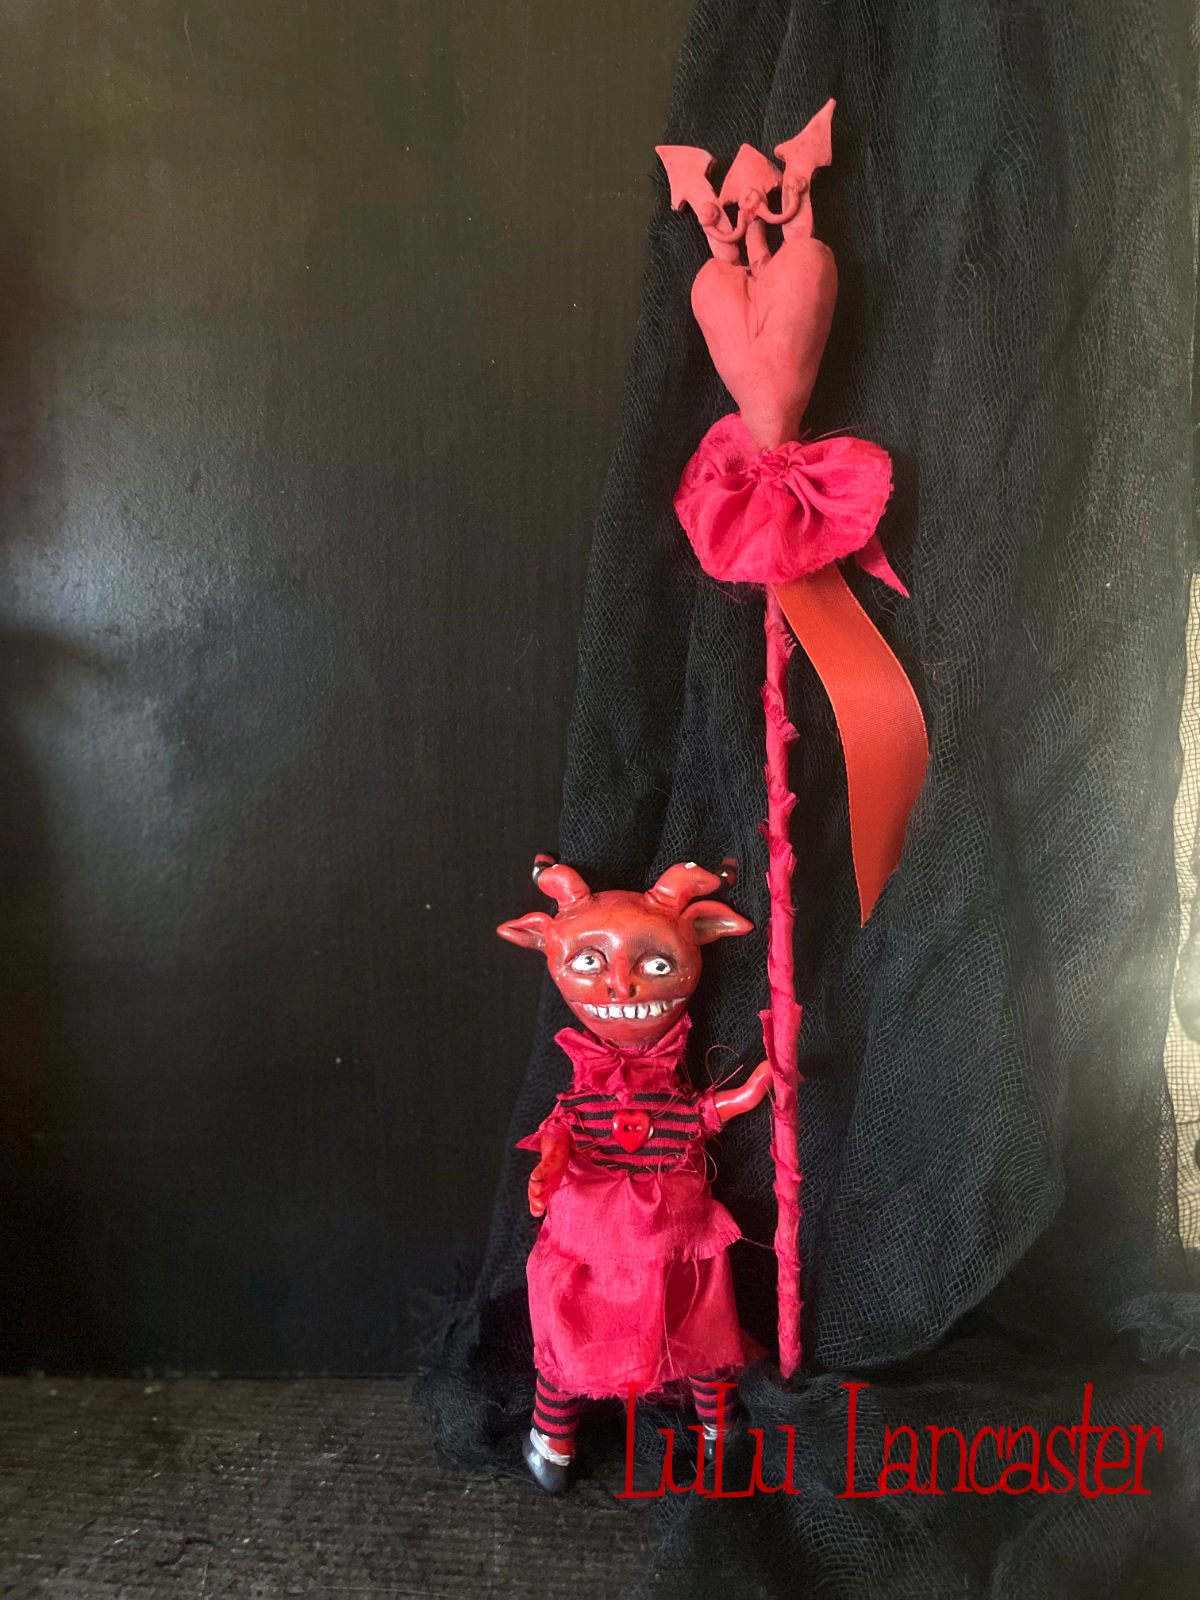 Valentina Devil Valloween Original LuLu Lancaster Art Doll